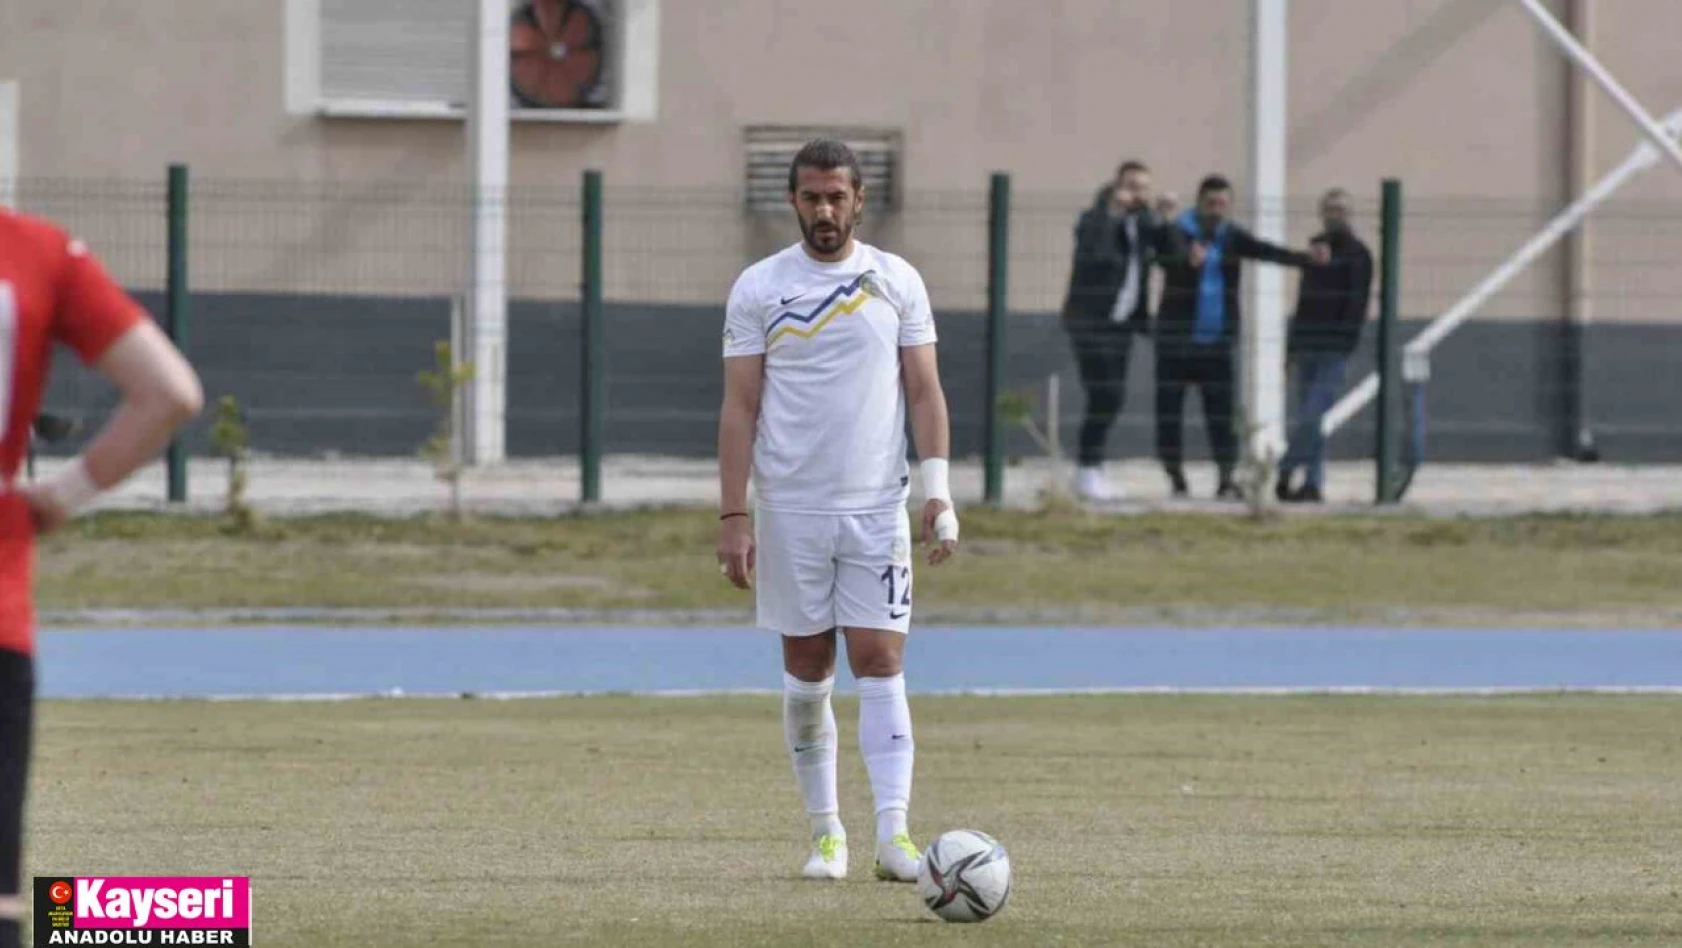 Talasgücü'nde Ahmet Şahbaz gollerini frikikten atıyor